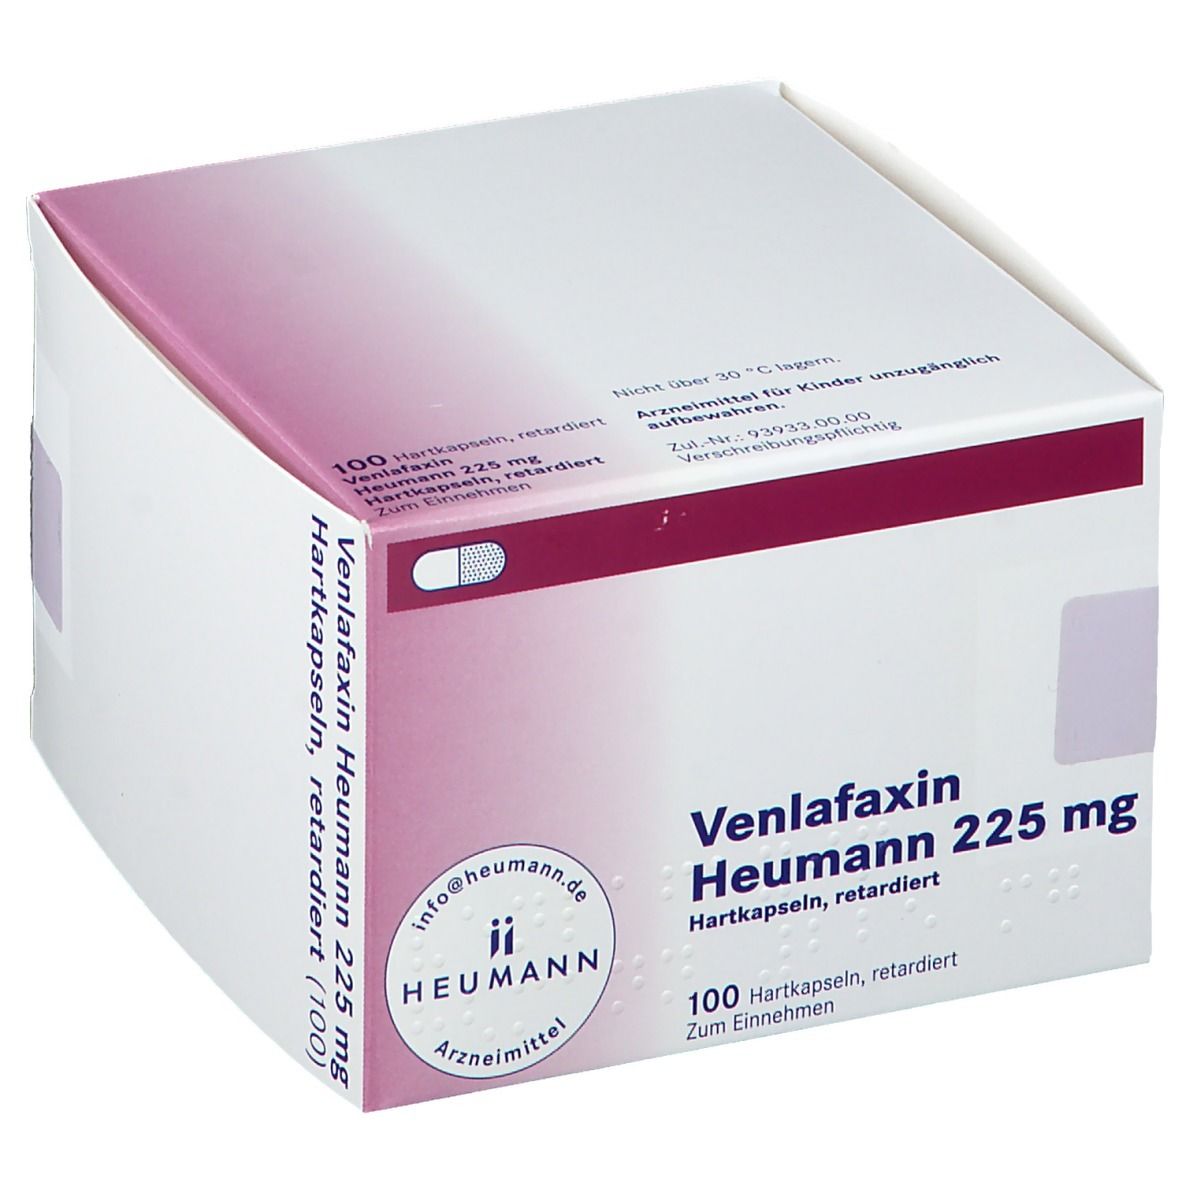 Venlafaxin Heumann 225 mg Hartkapseln, retardiert